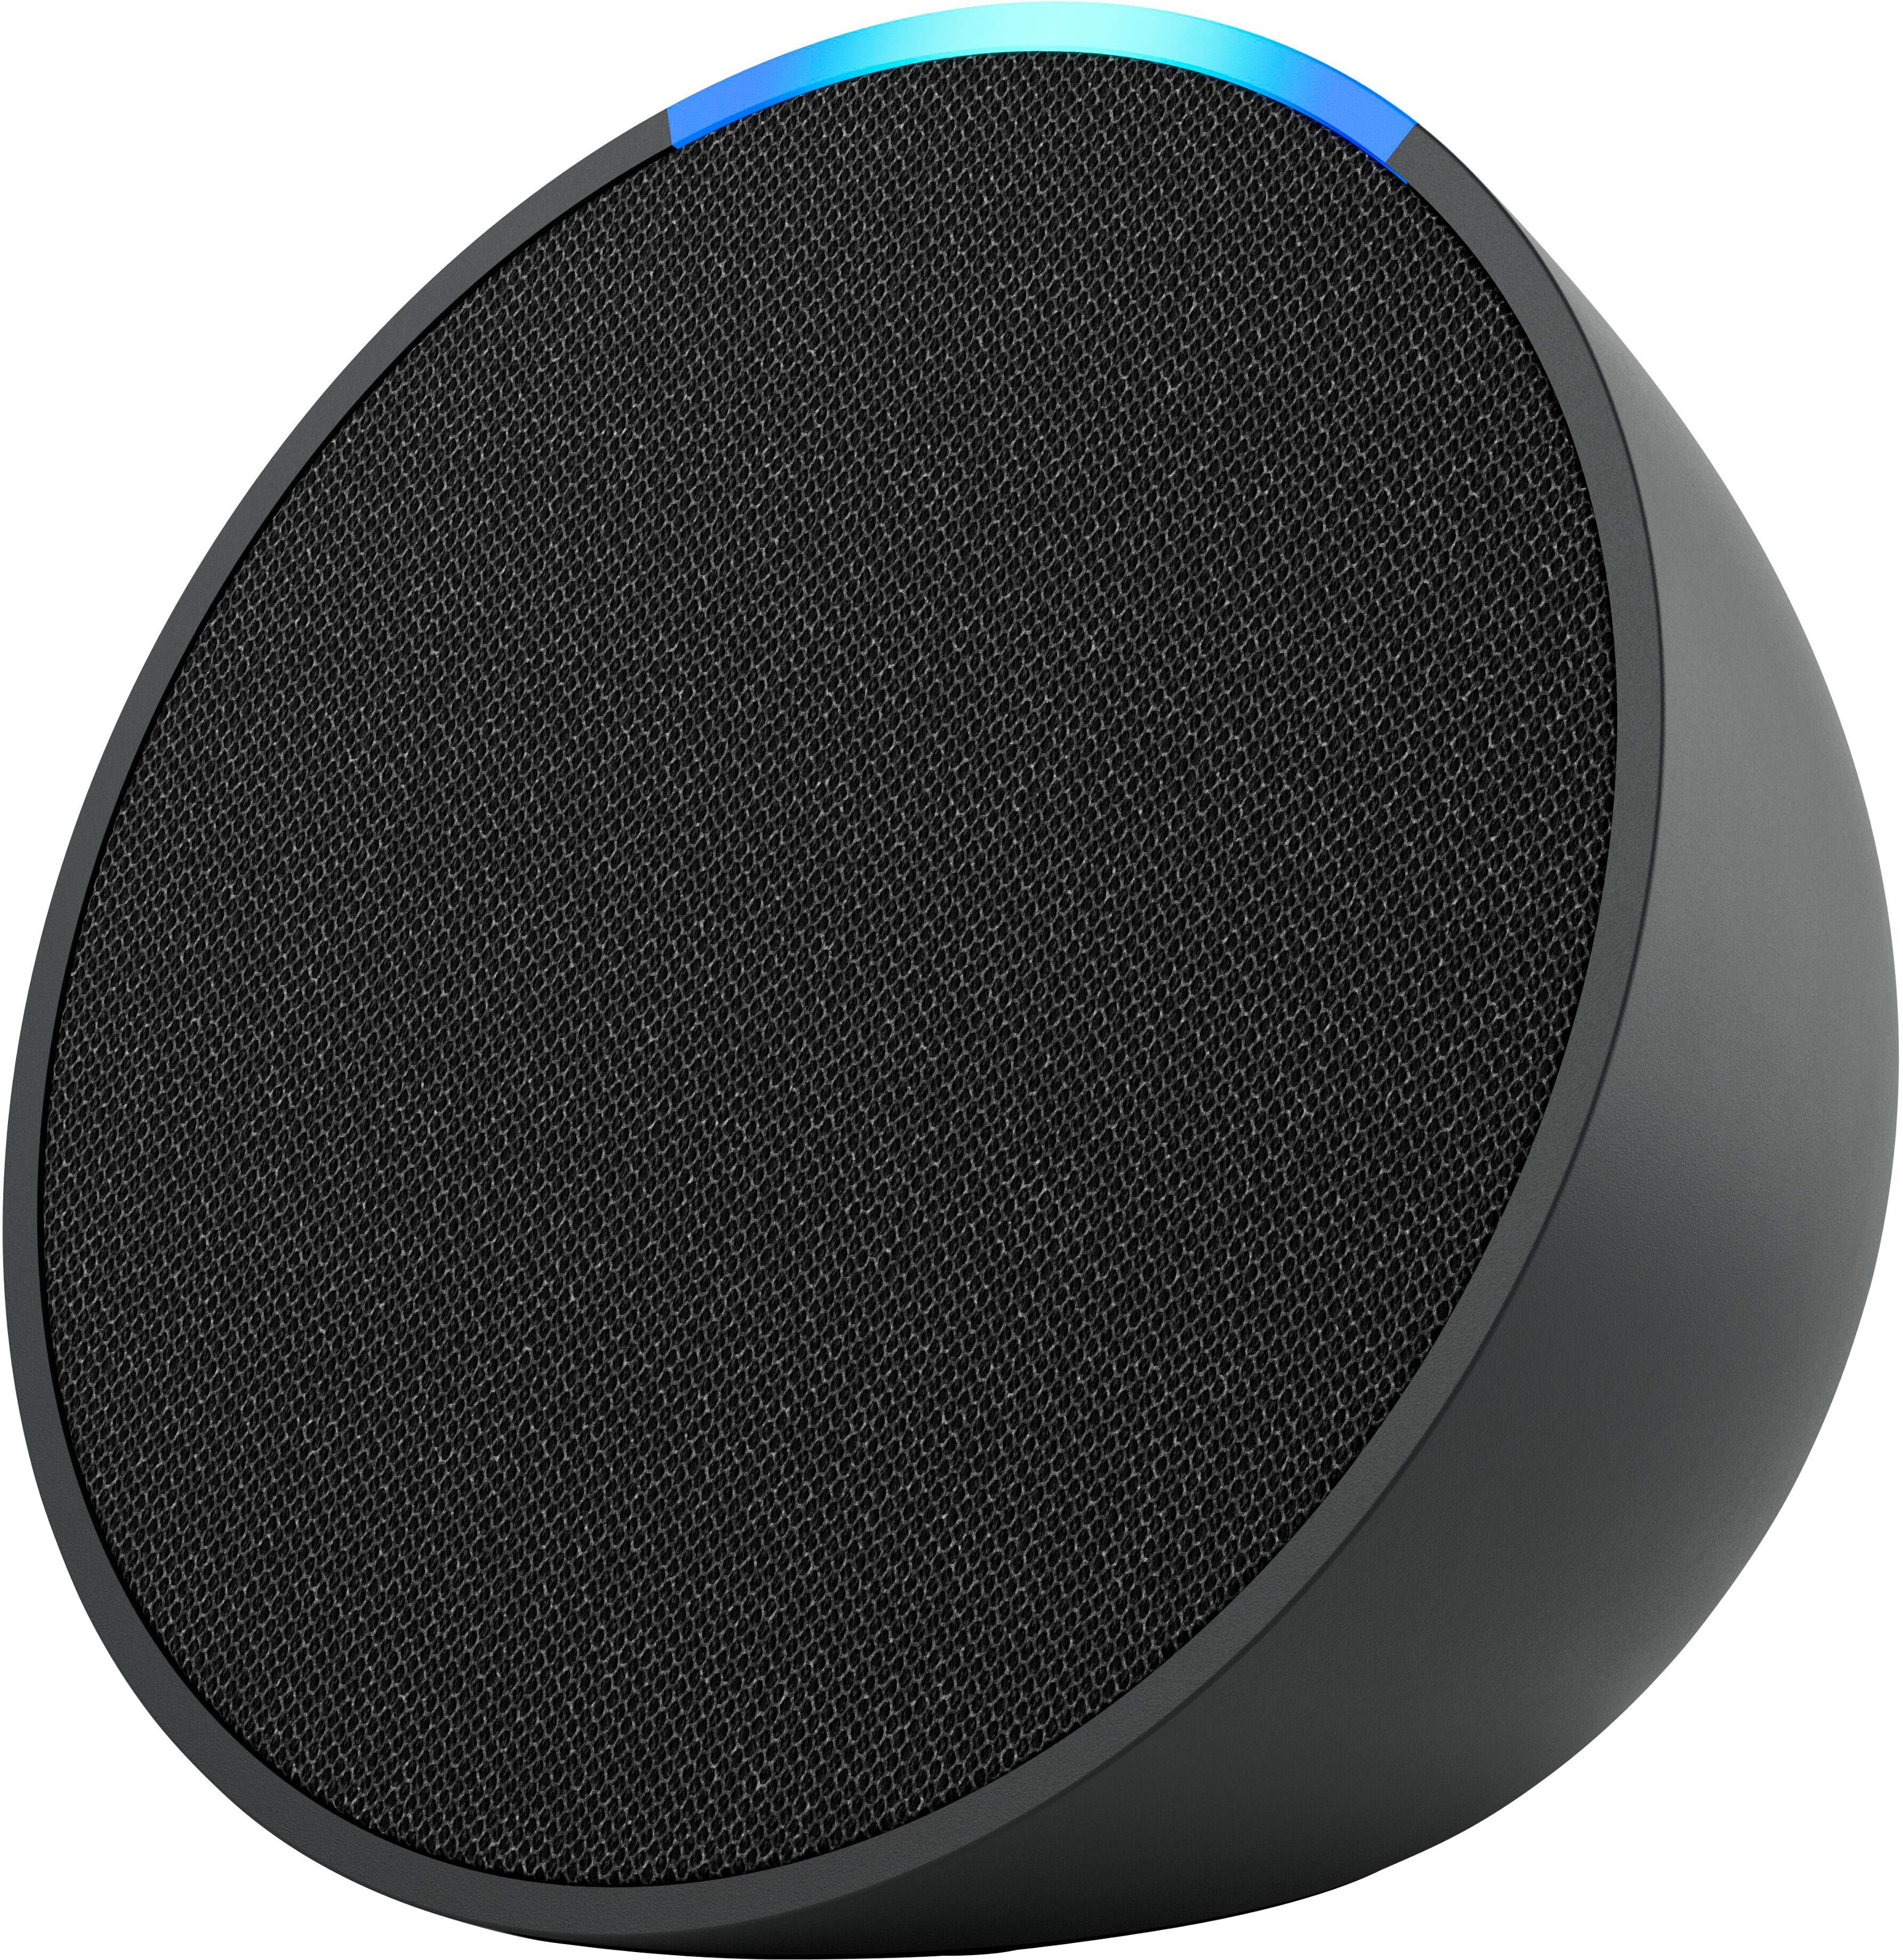 Echo Dot (3rd Gen) Smart Speaker with Alexa Sandstone B07N8RPRF7 -  Best Buy